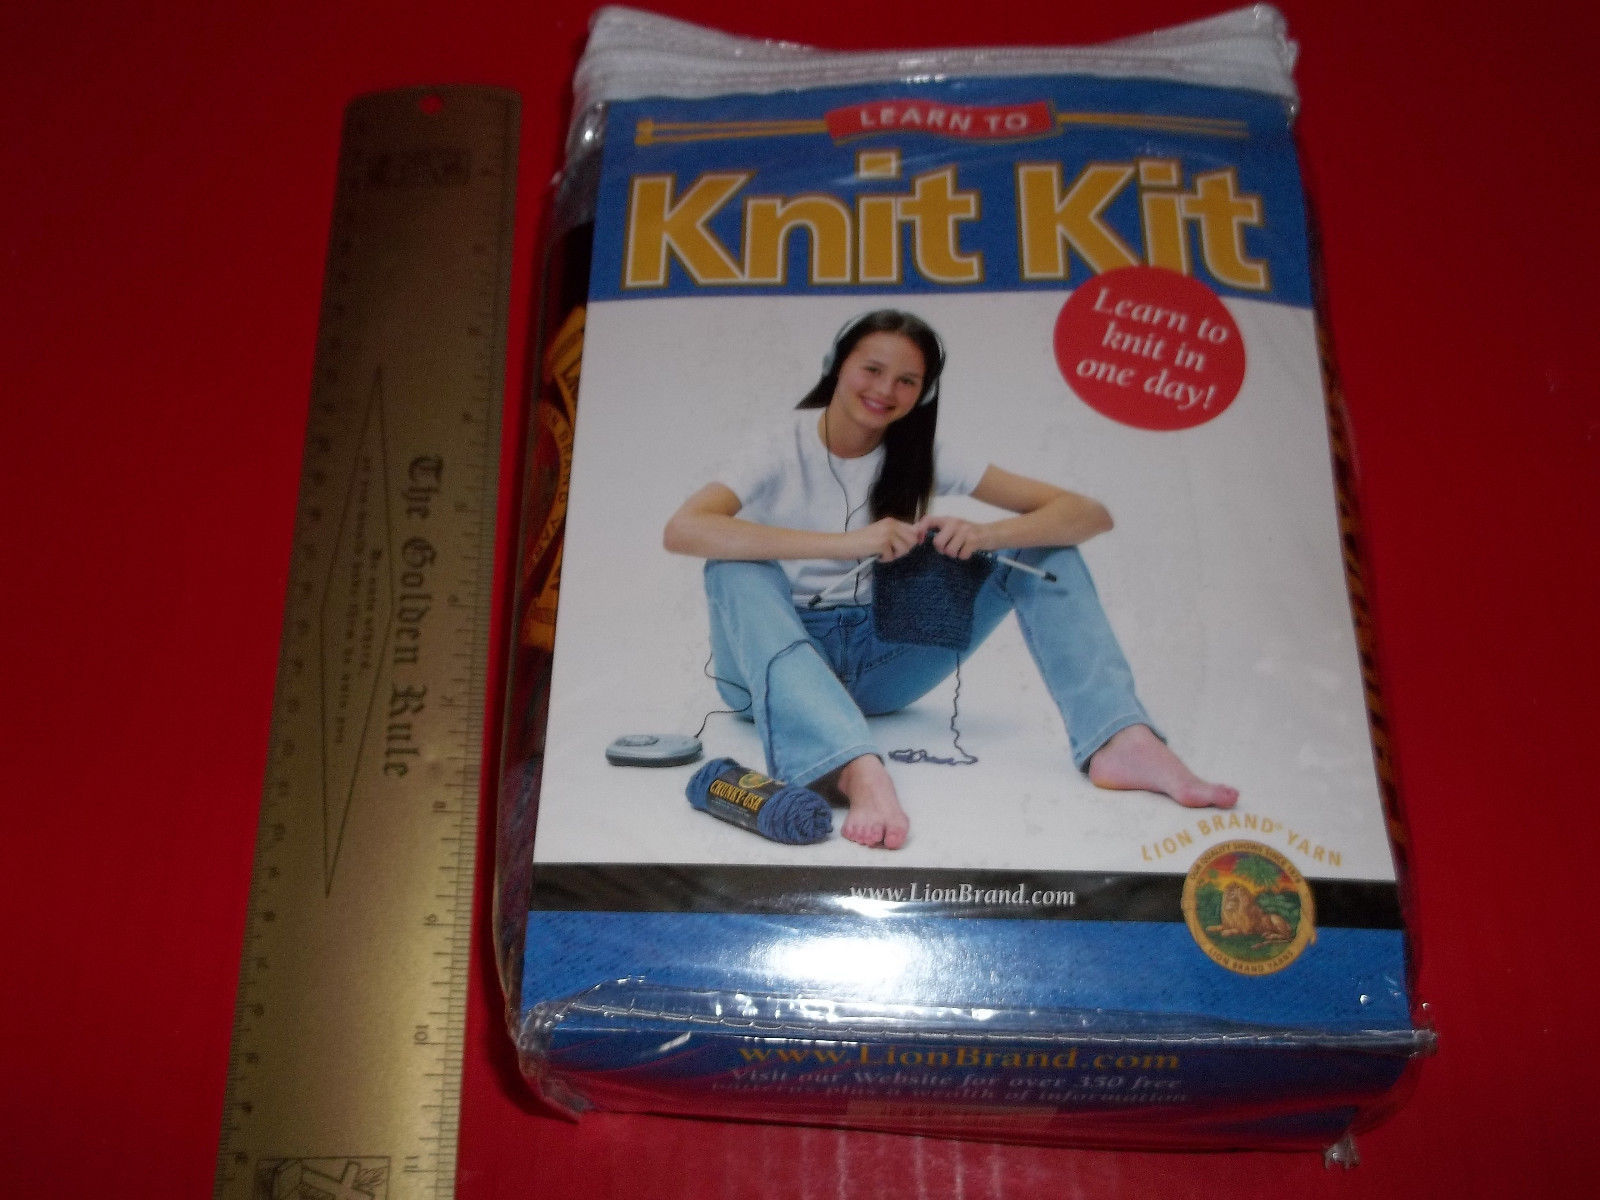 Beginner Knitting Kit - Gist Yarn